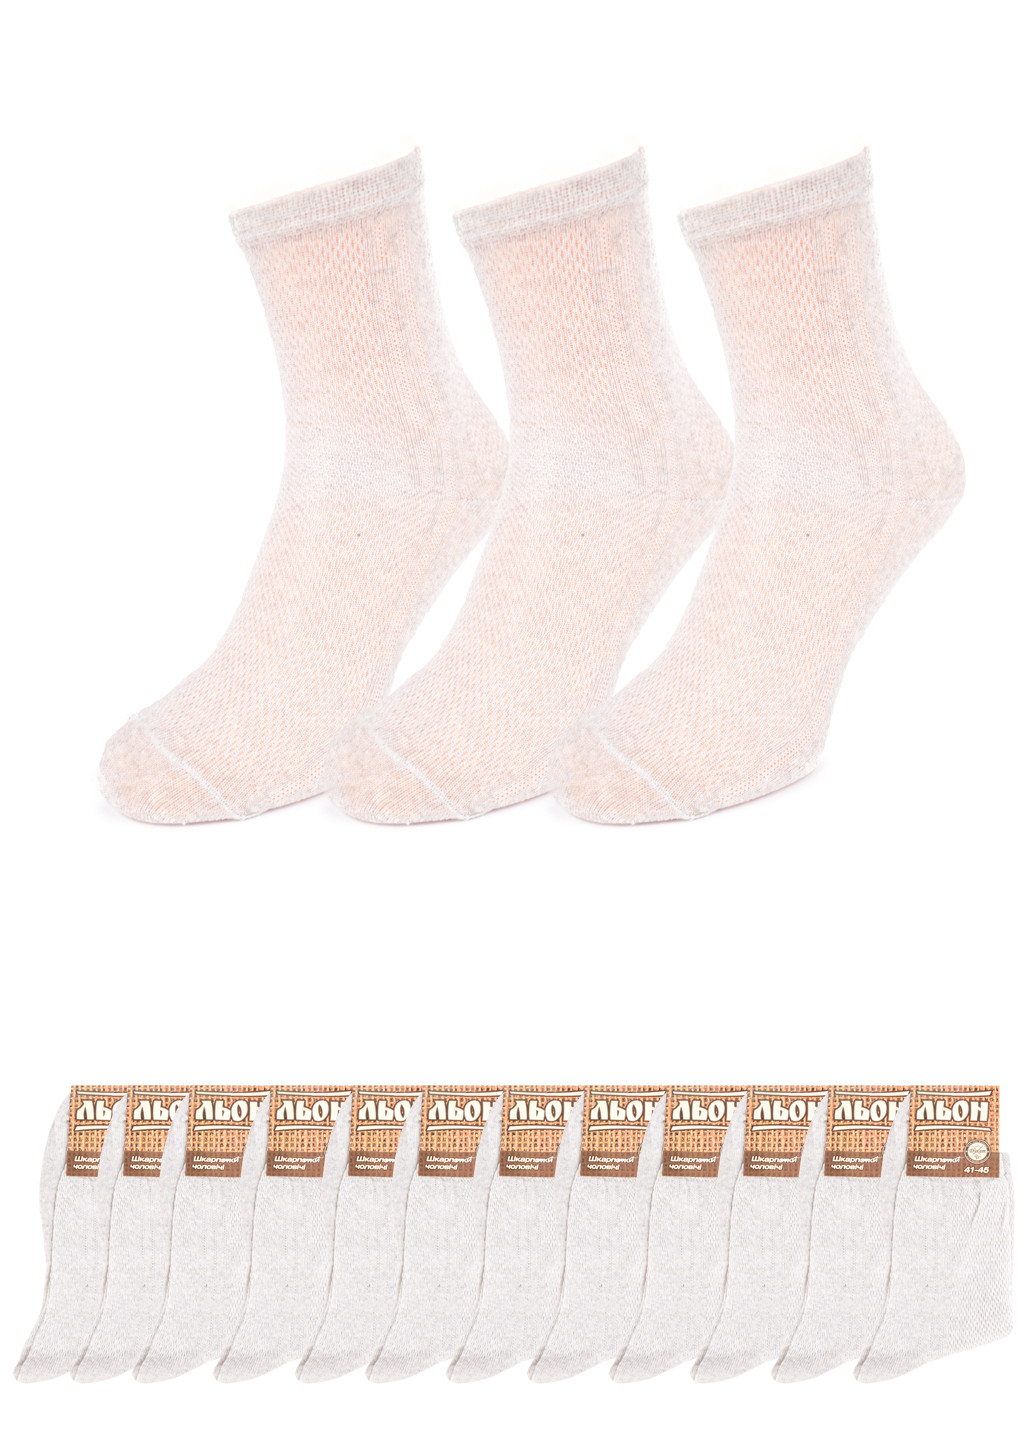 Мужские льняные носки (12 пар) Дукат однотонные серые повседневные